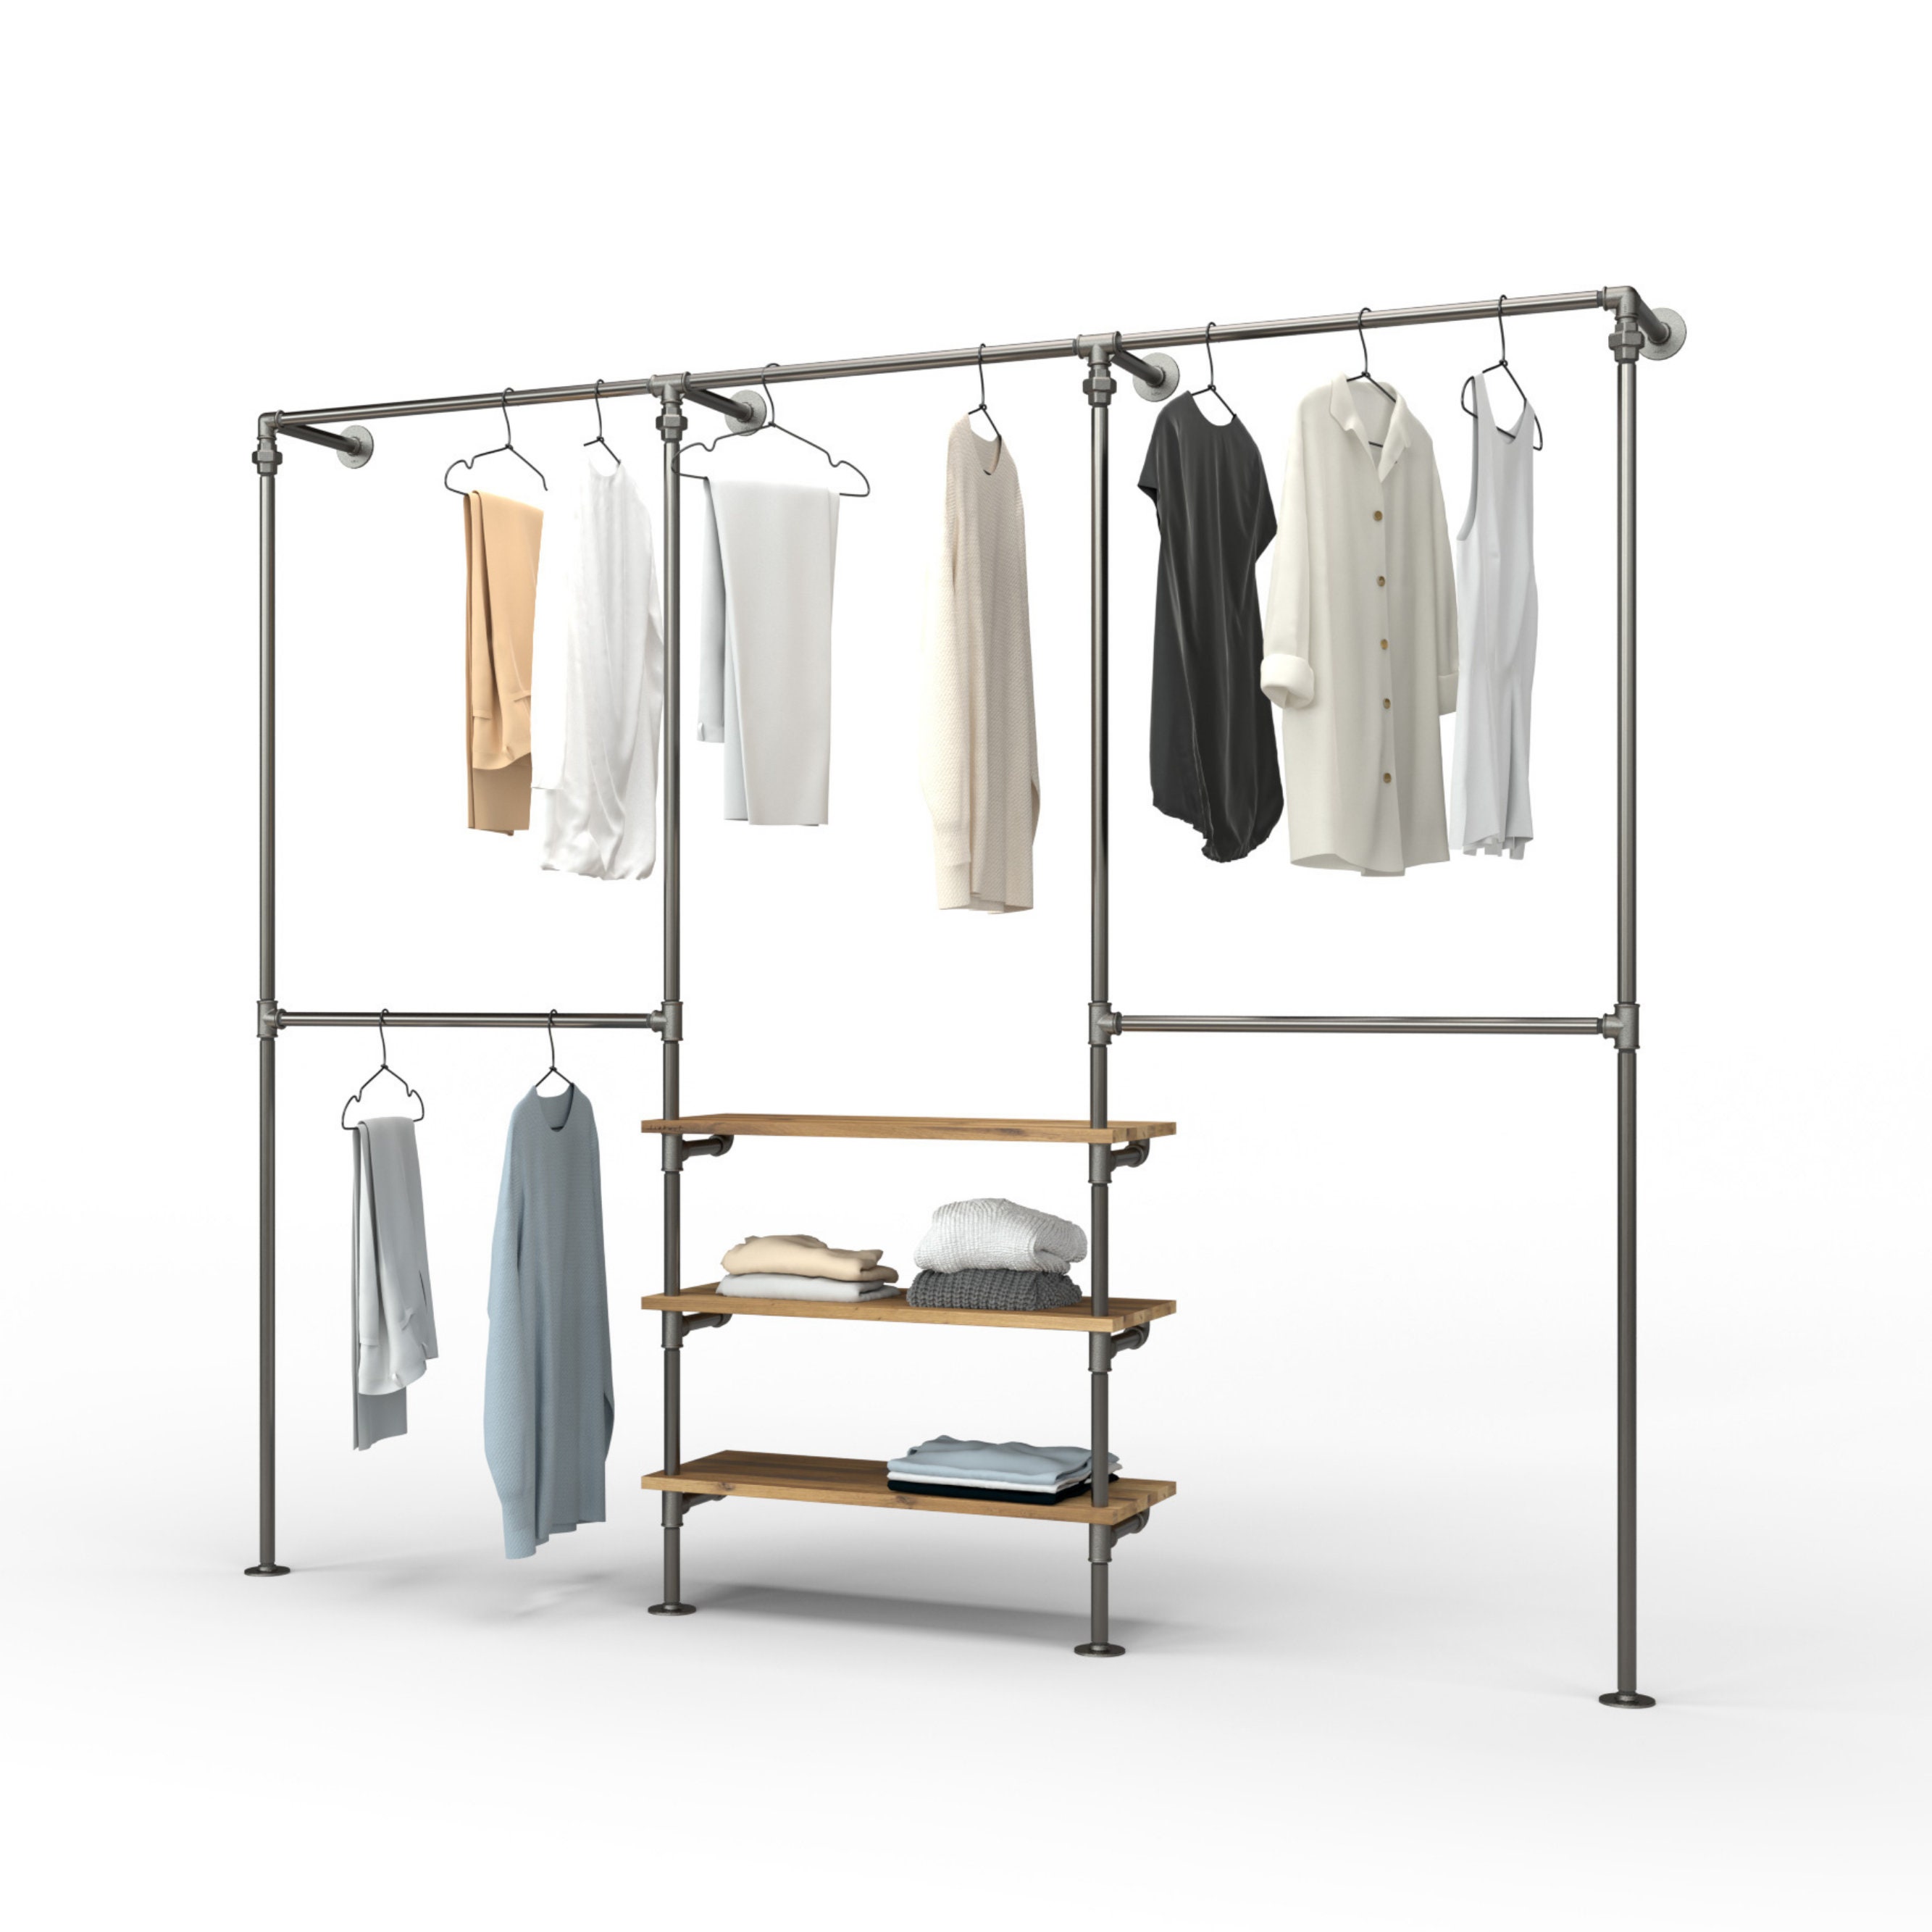 TRIPLE Shelf Type 1 Kleiderstangen System mit 3 Reihen und 3 Regalen,  Kleiderschrank begehbar aus Stahl und Holz, Garderobe minimalistisch